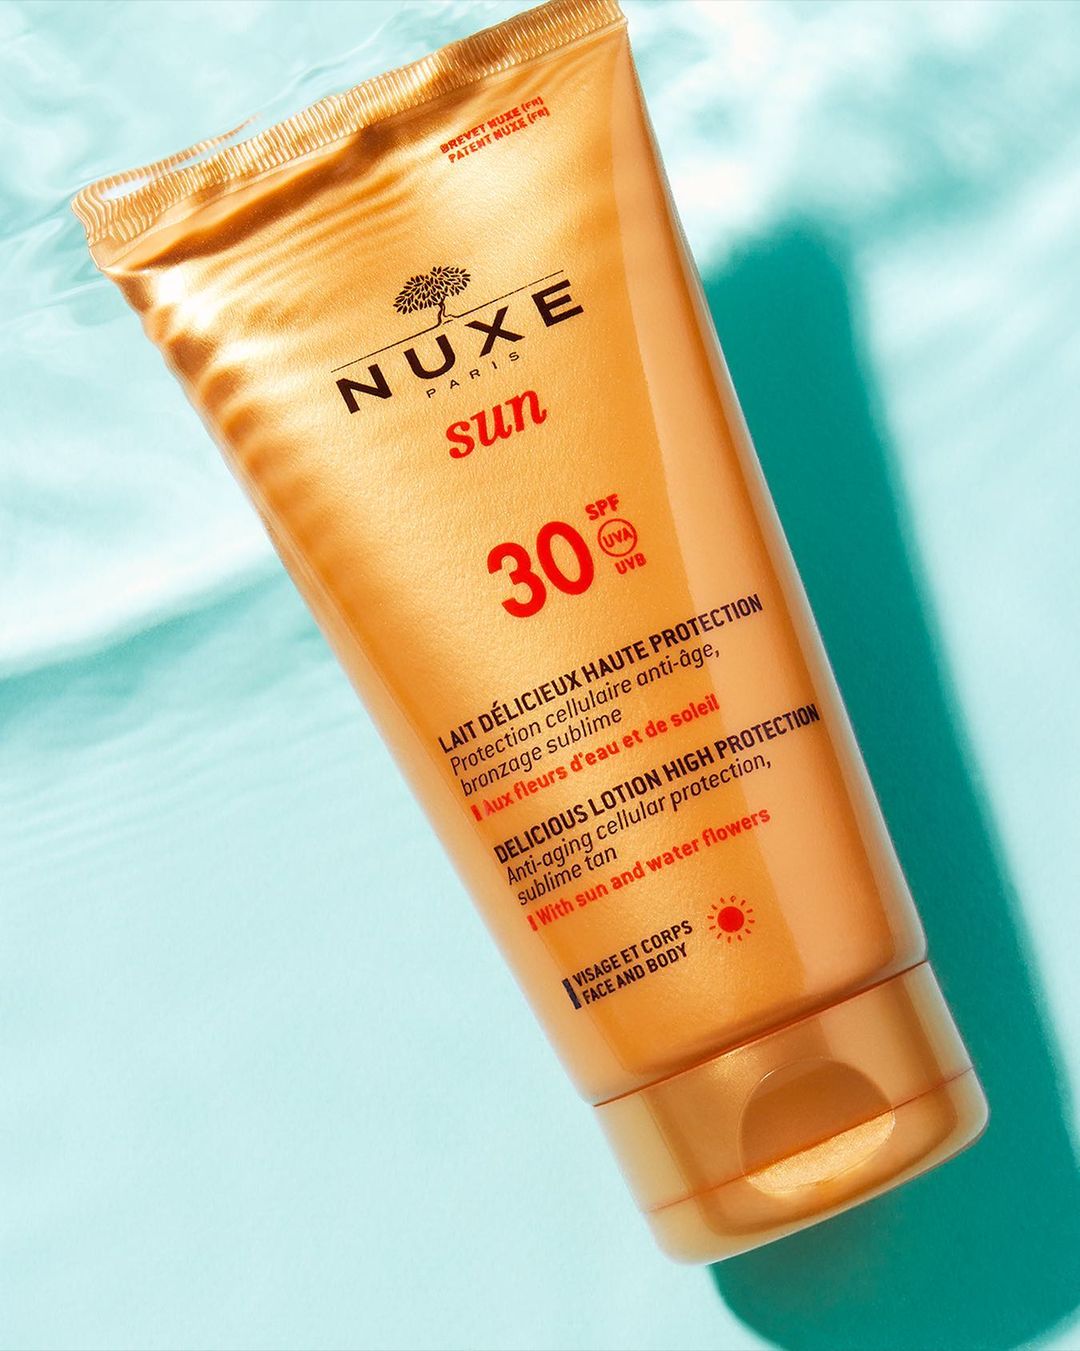 NUXE SUN Leche Deliciosa para Rostro y Cuerpo SPF30 Nuxe Sun es perfecta para aplicar en rostro y cuerpo protegiendo nuestra piel de la exposición solar de forma efectiva.